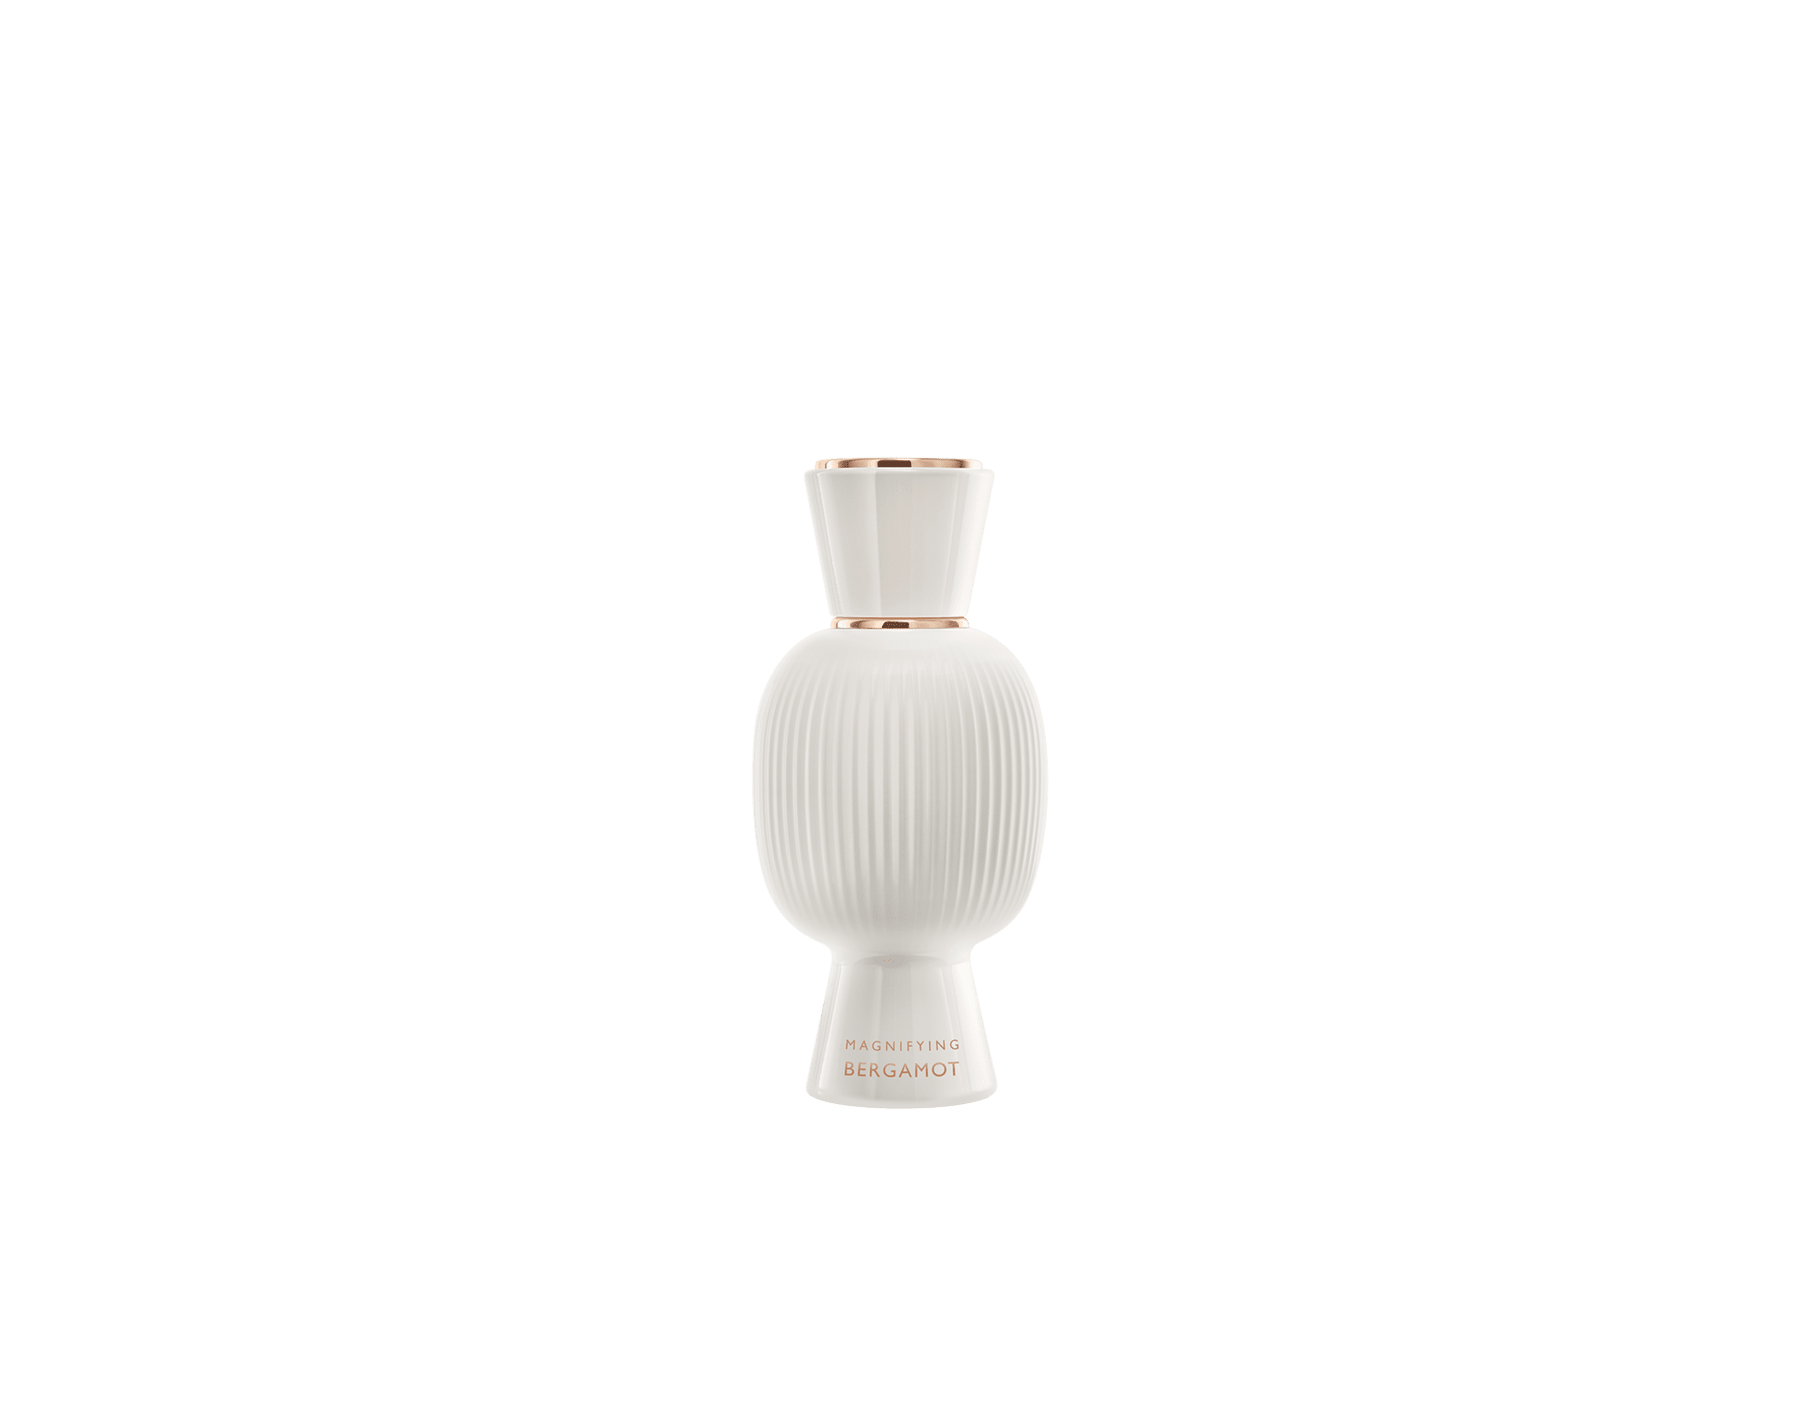 La vibrante vitalità di Magnifying Bergamot esalta la freschezza della tua Eau de Parfum. #MagnifyForMore Joy 41277 image 1